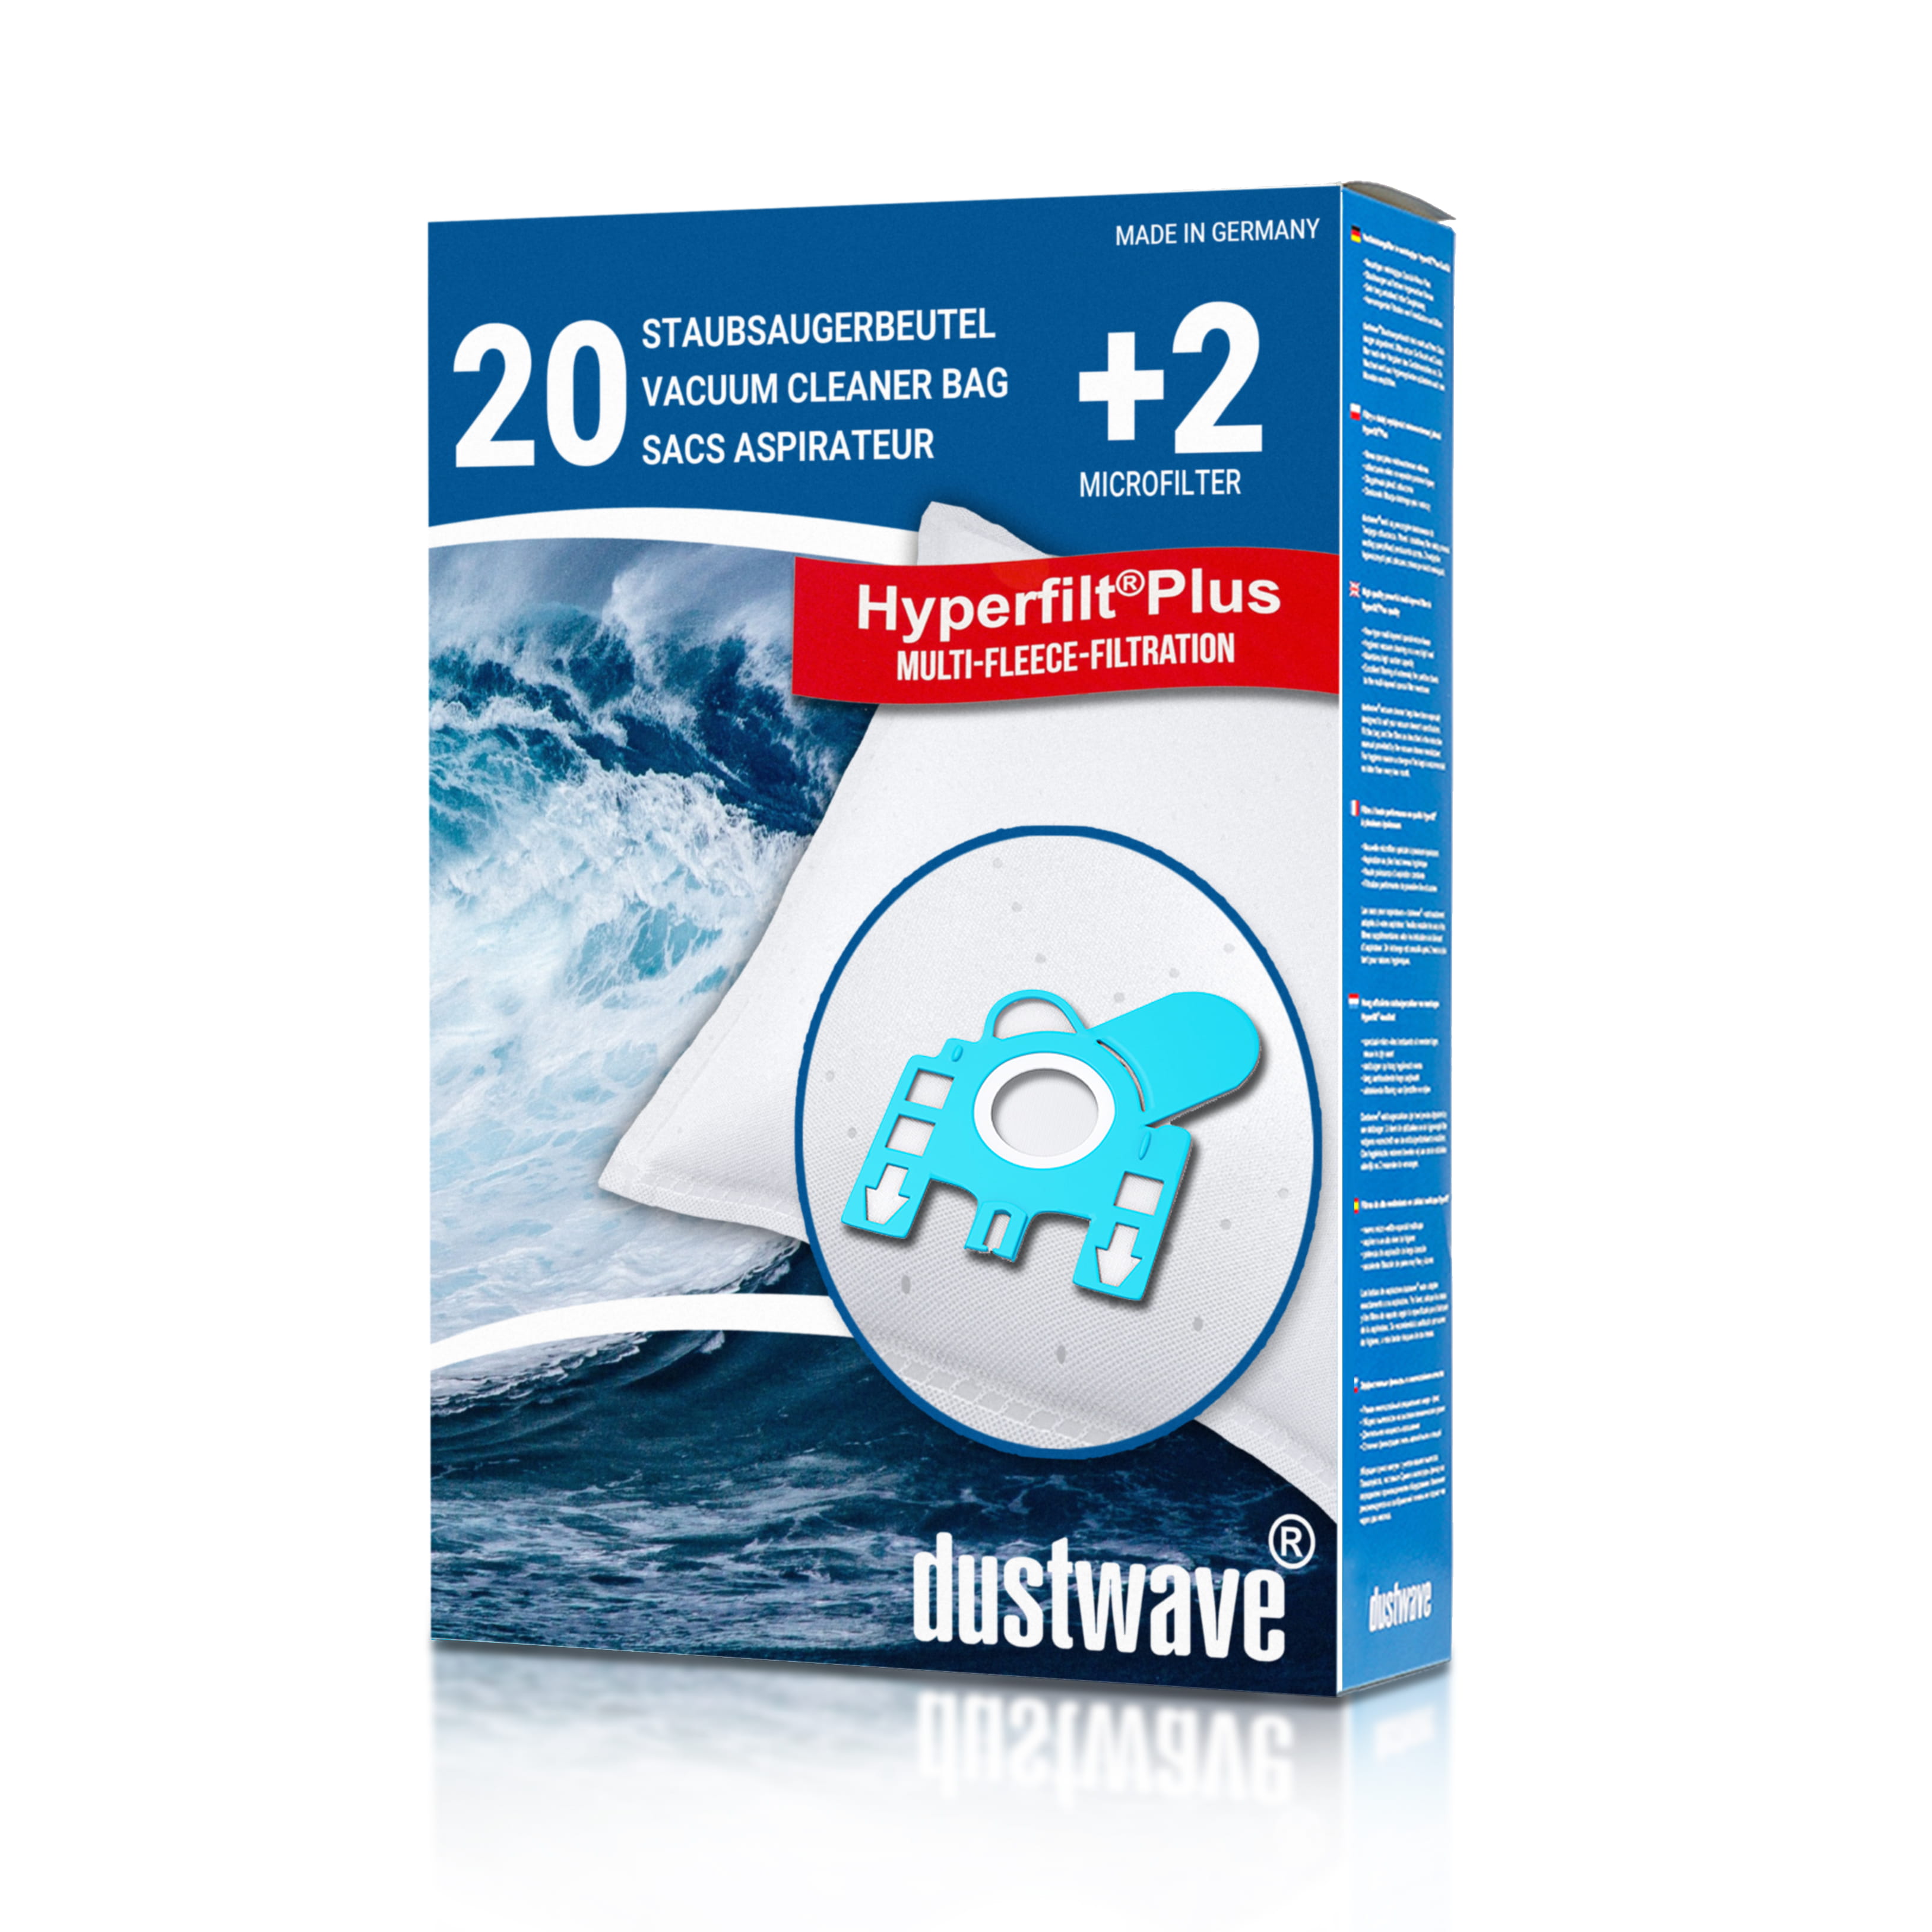 Dustwave® 20 Staubsaugerbeutel für SWIRL H 30 - hocheffizient, mehrlagiges Mikrovlies mit Hygieneverschluss - Made in Germany